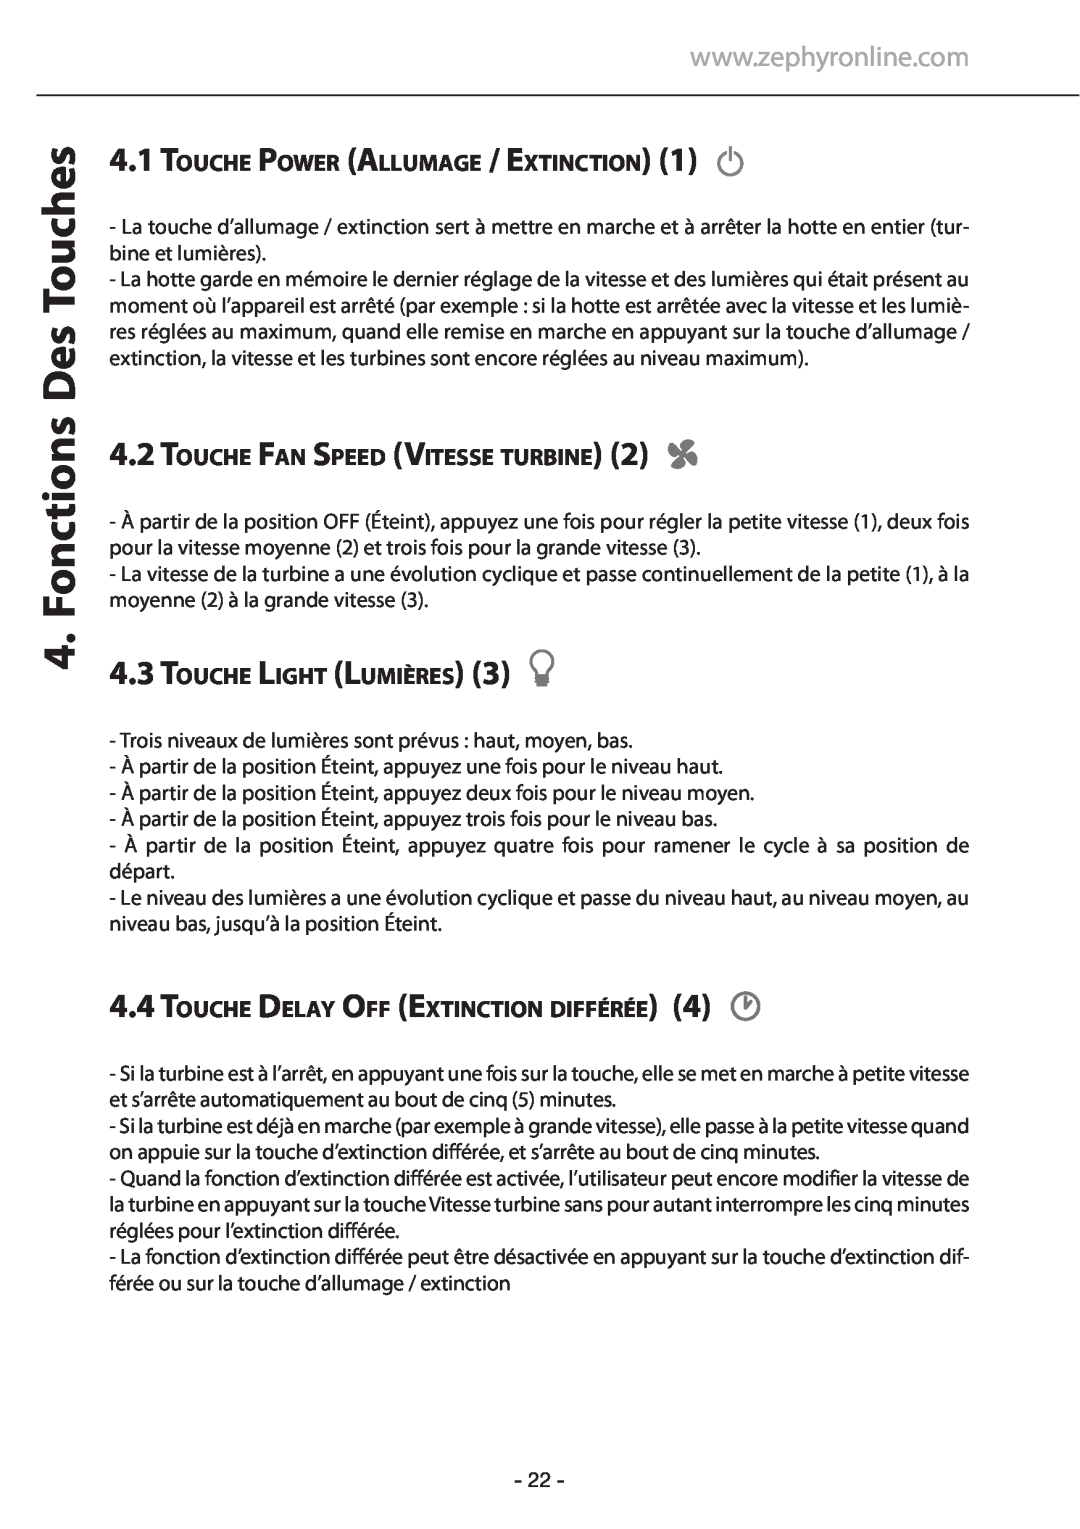 Zephyr GU5/MR16 manual Fonctions Des Touches, 4.1TOUCHE POWER ALLUMAGE / EXTINCTION, 4.2TOUCHE FAN SPEED VITESSE TURBINE 